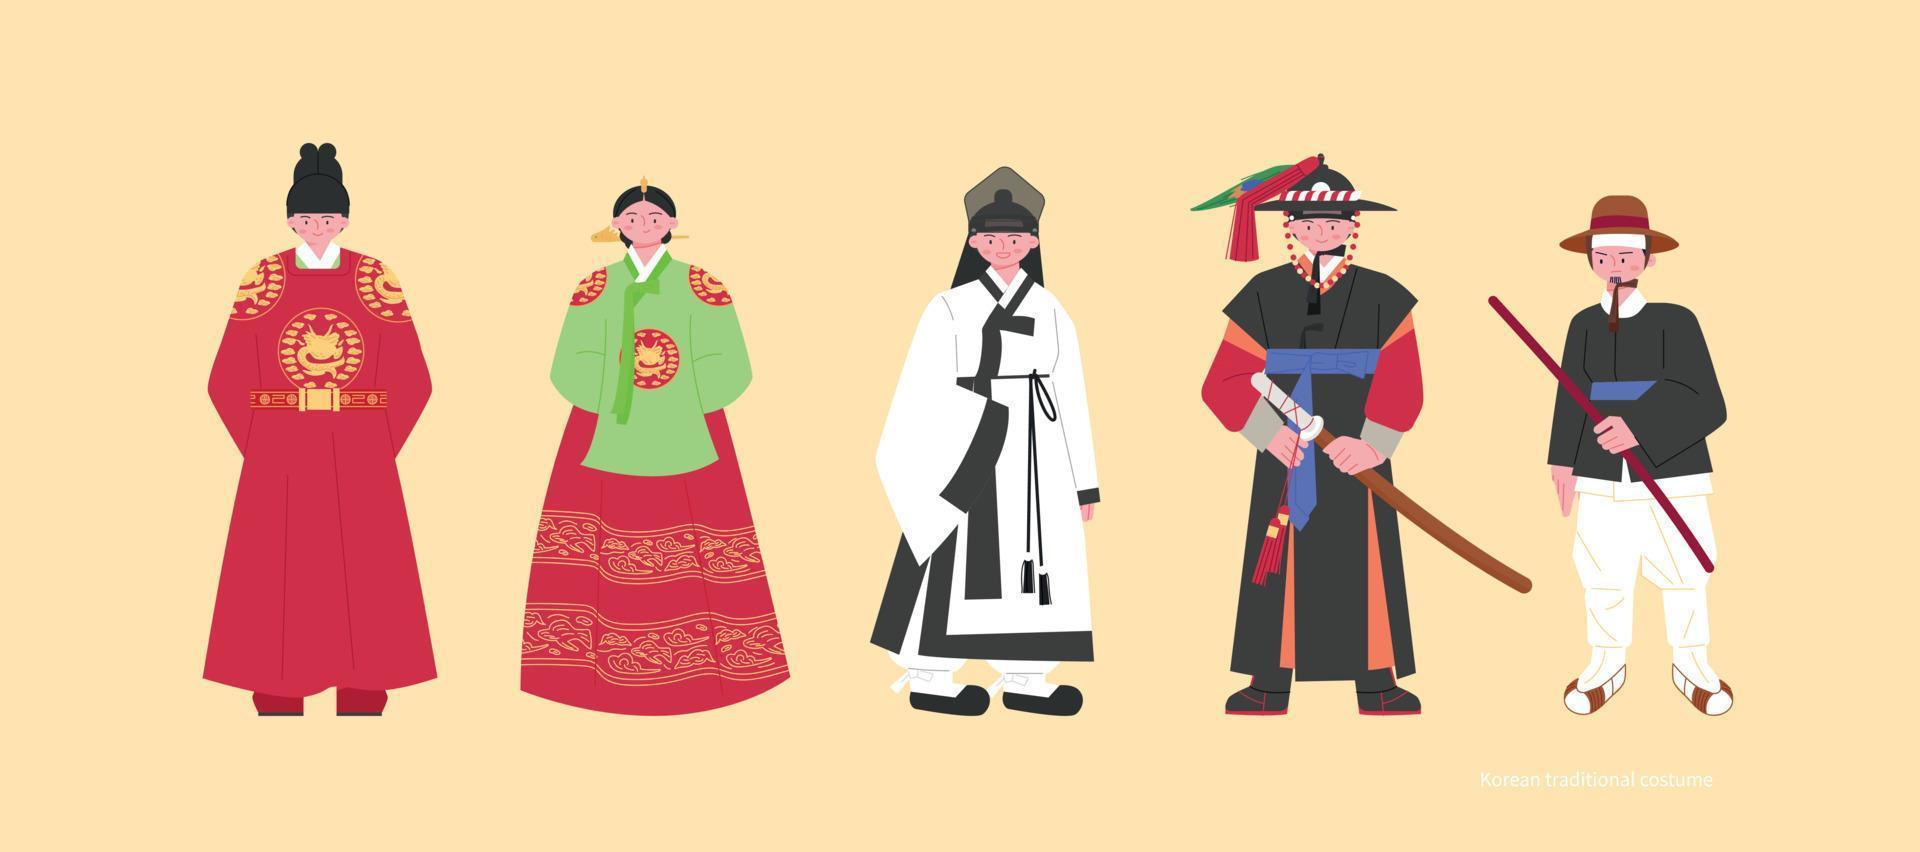 kostuums van de joseon dynastie. koningen en koninginnen, studenten, Politie kapiteins en politie. hand- getrokken vector illustratie.